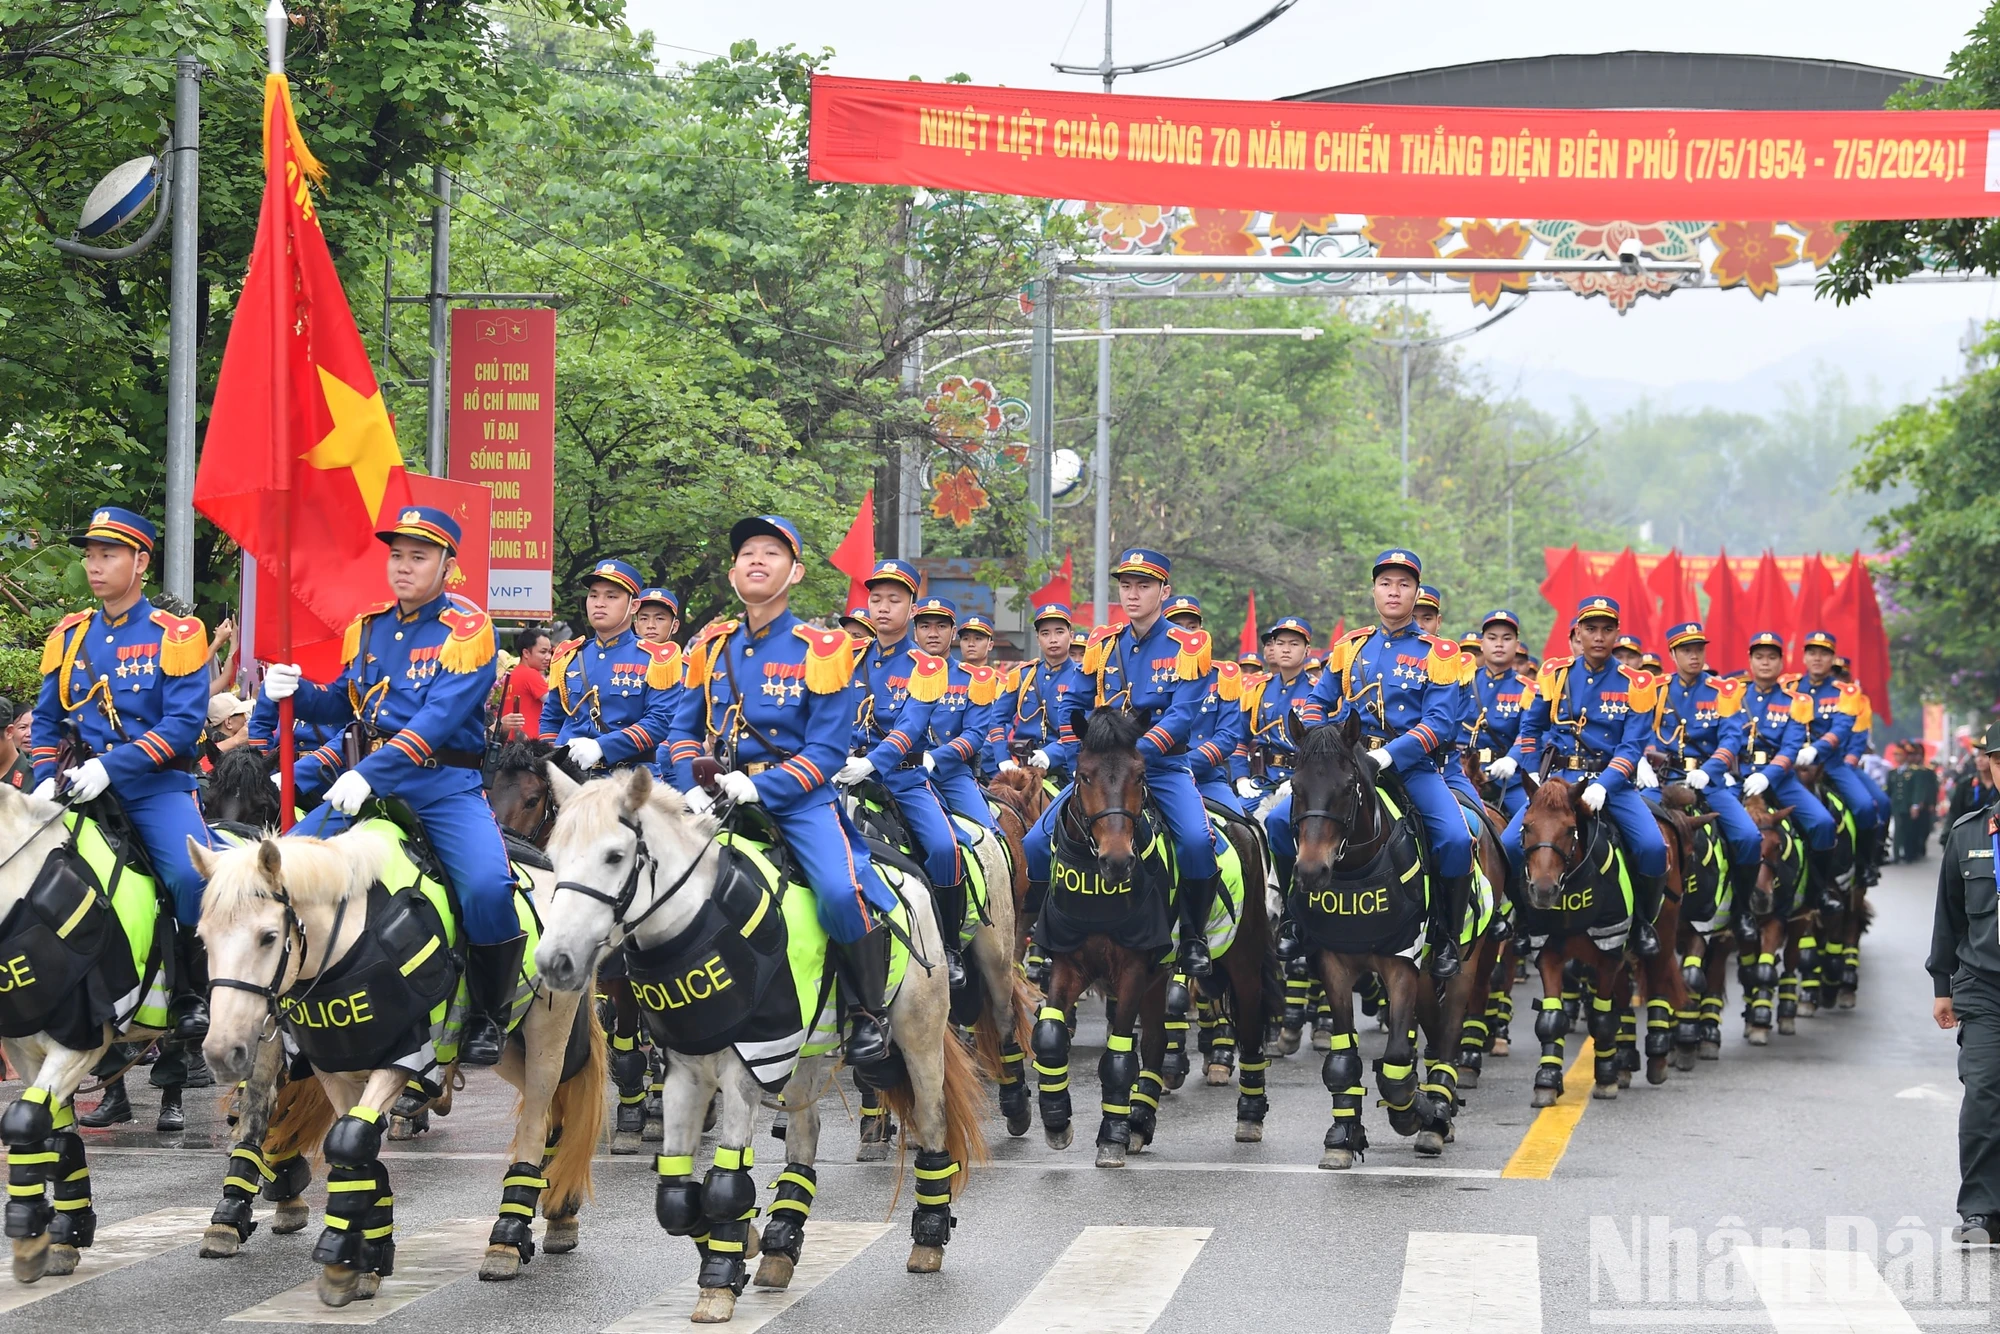 Sự xuất hiện của khối Cảnh sát cơ động kỵ binh cũng nhận được sự chờ đón của người dân.

